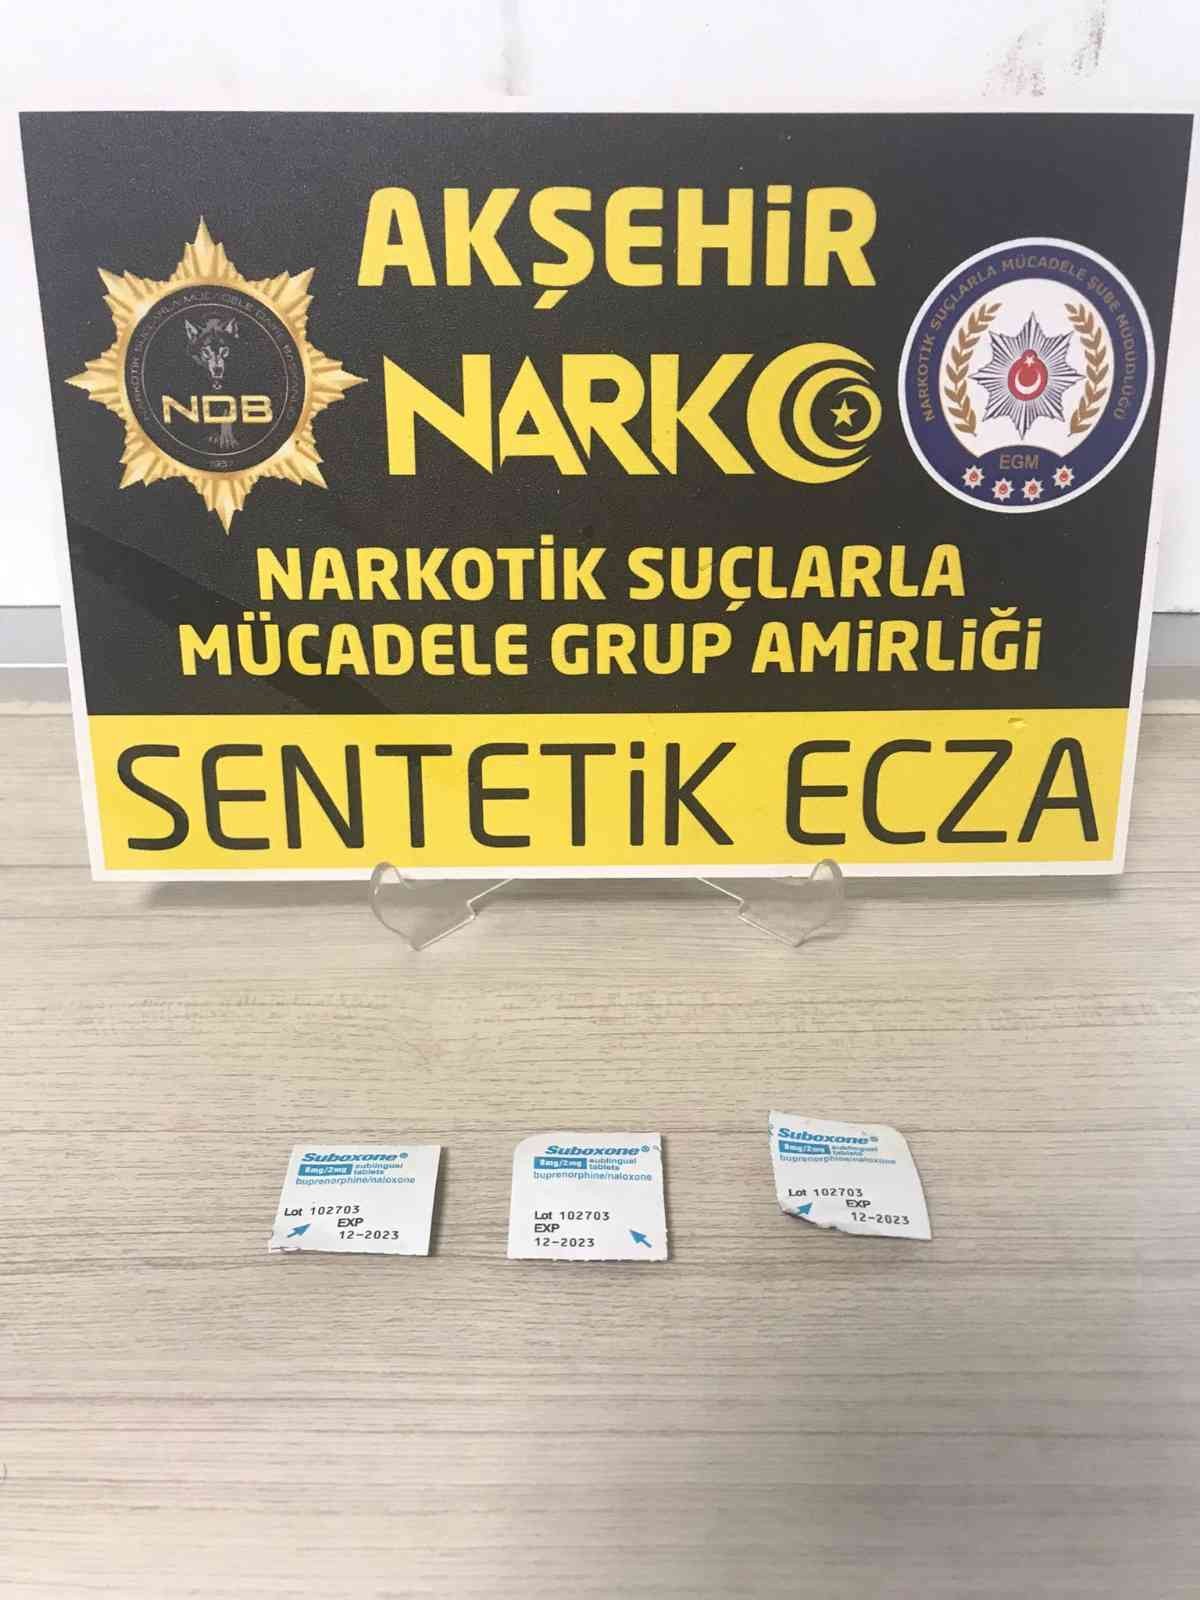 Konya’da uyuşturucu satıcısı 1 kişi tutuklandı #konya